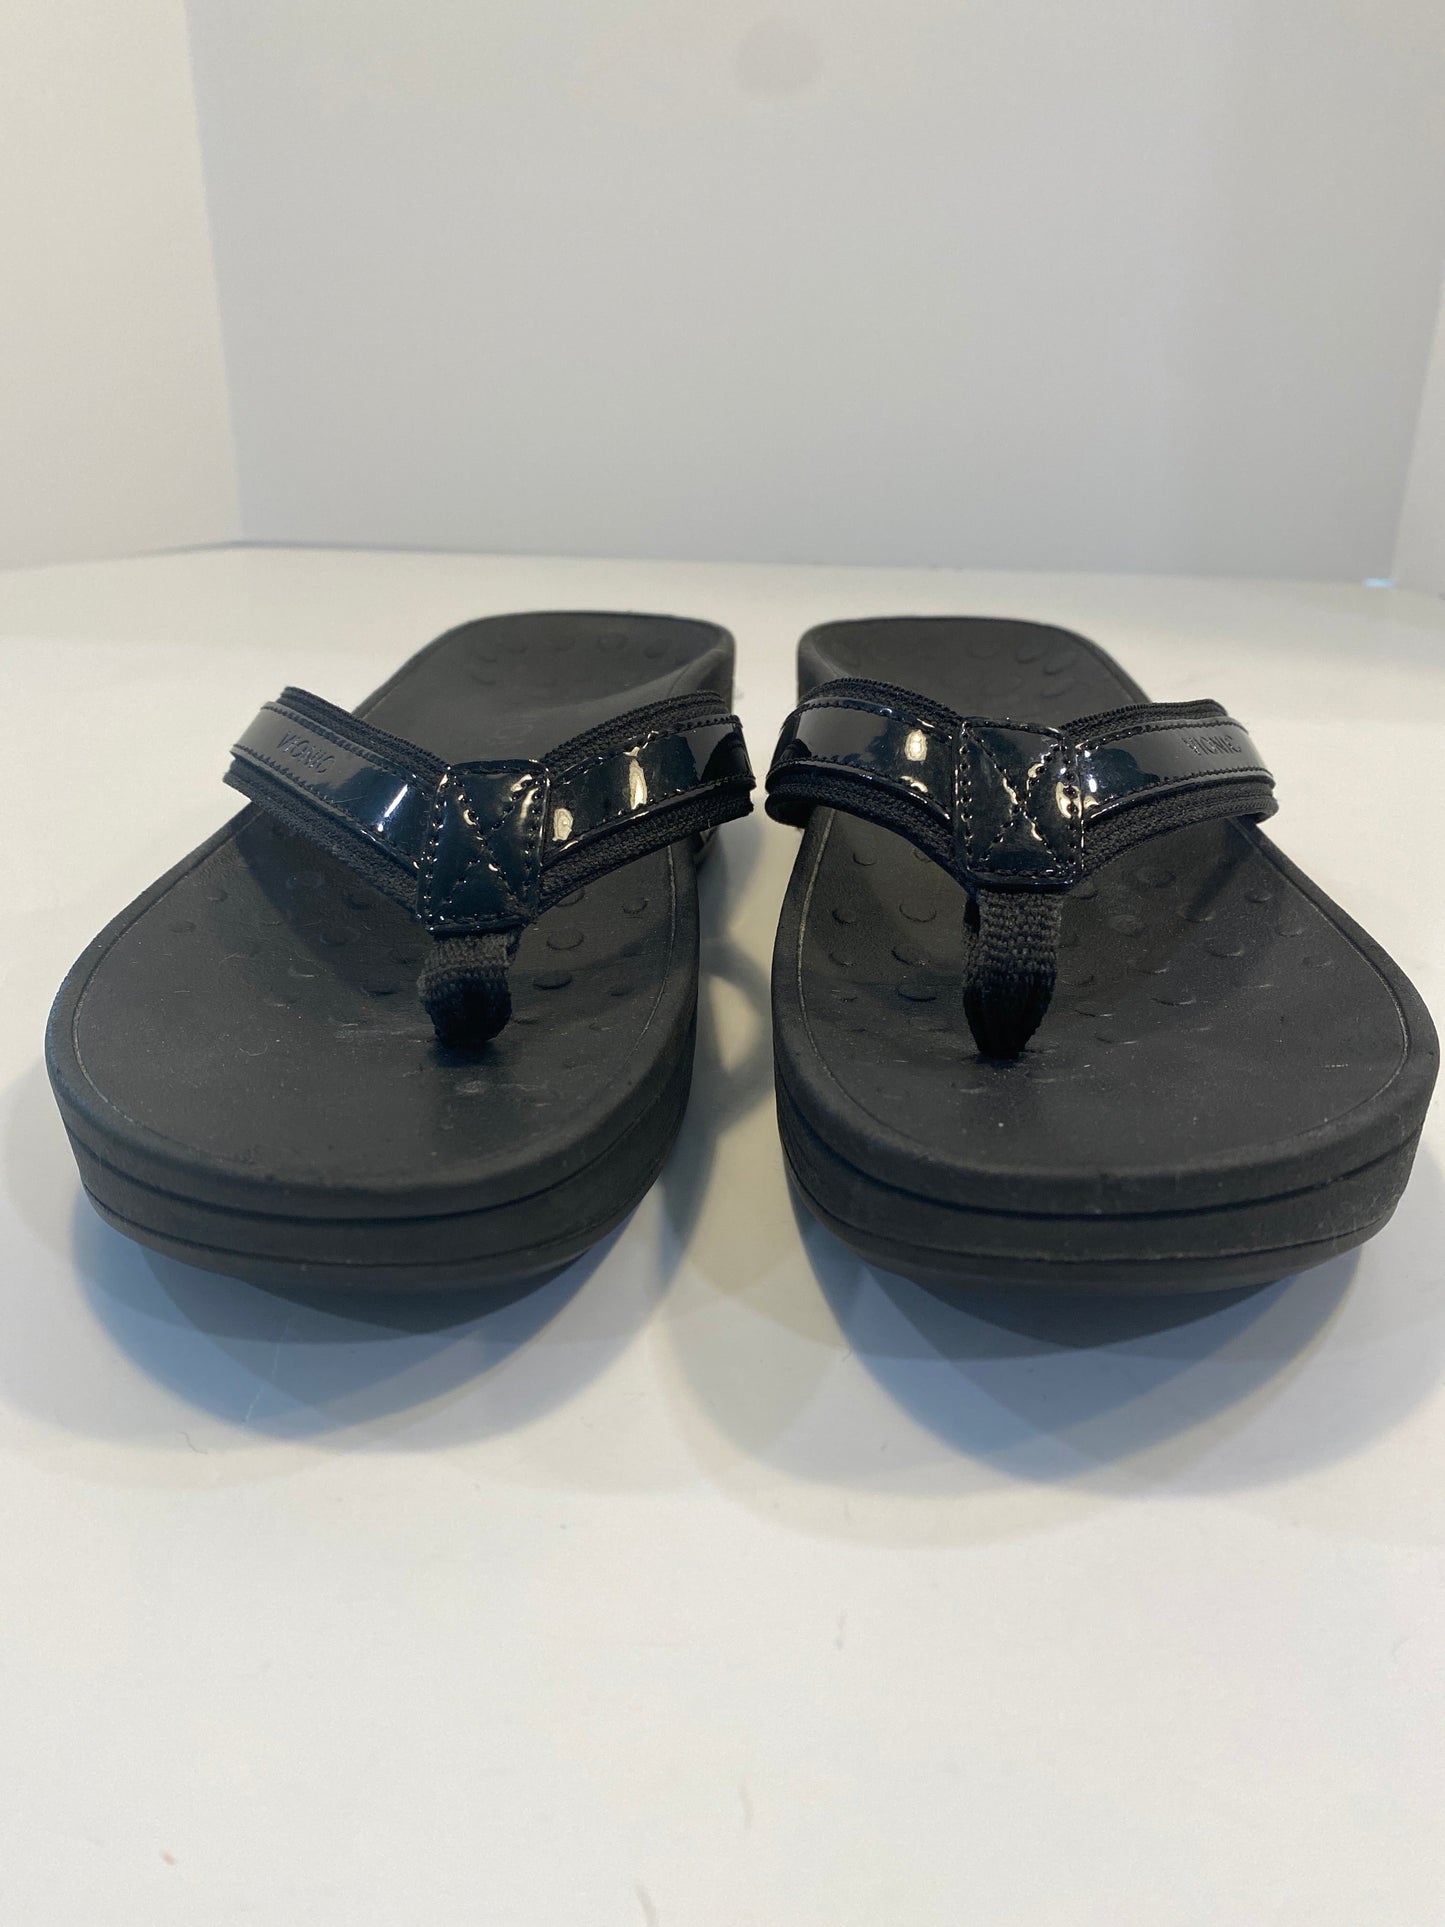 Black Sandals Flip Flops Vionic, Size 8